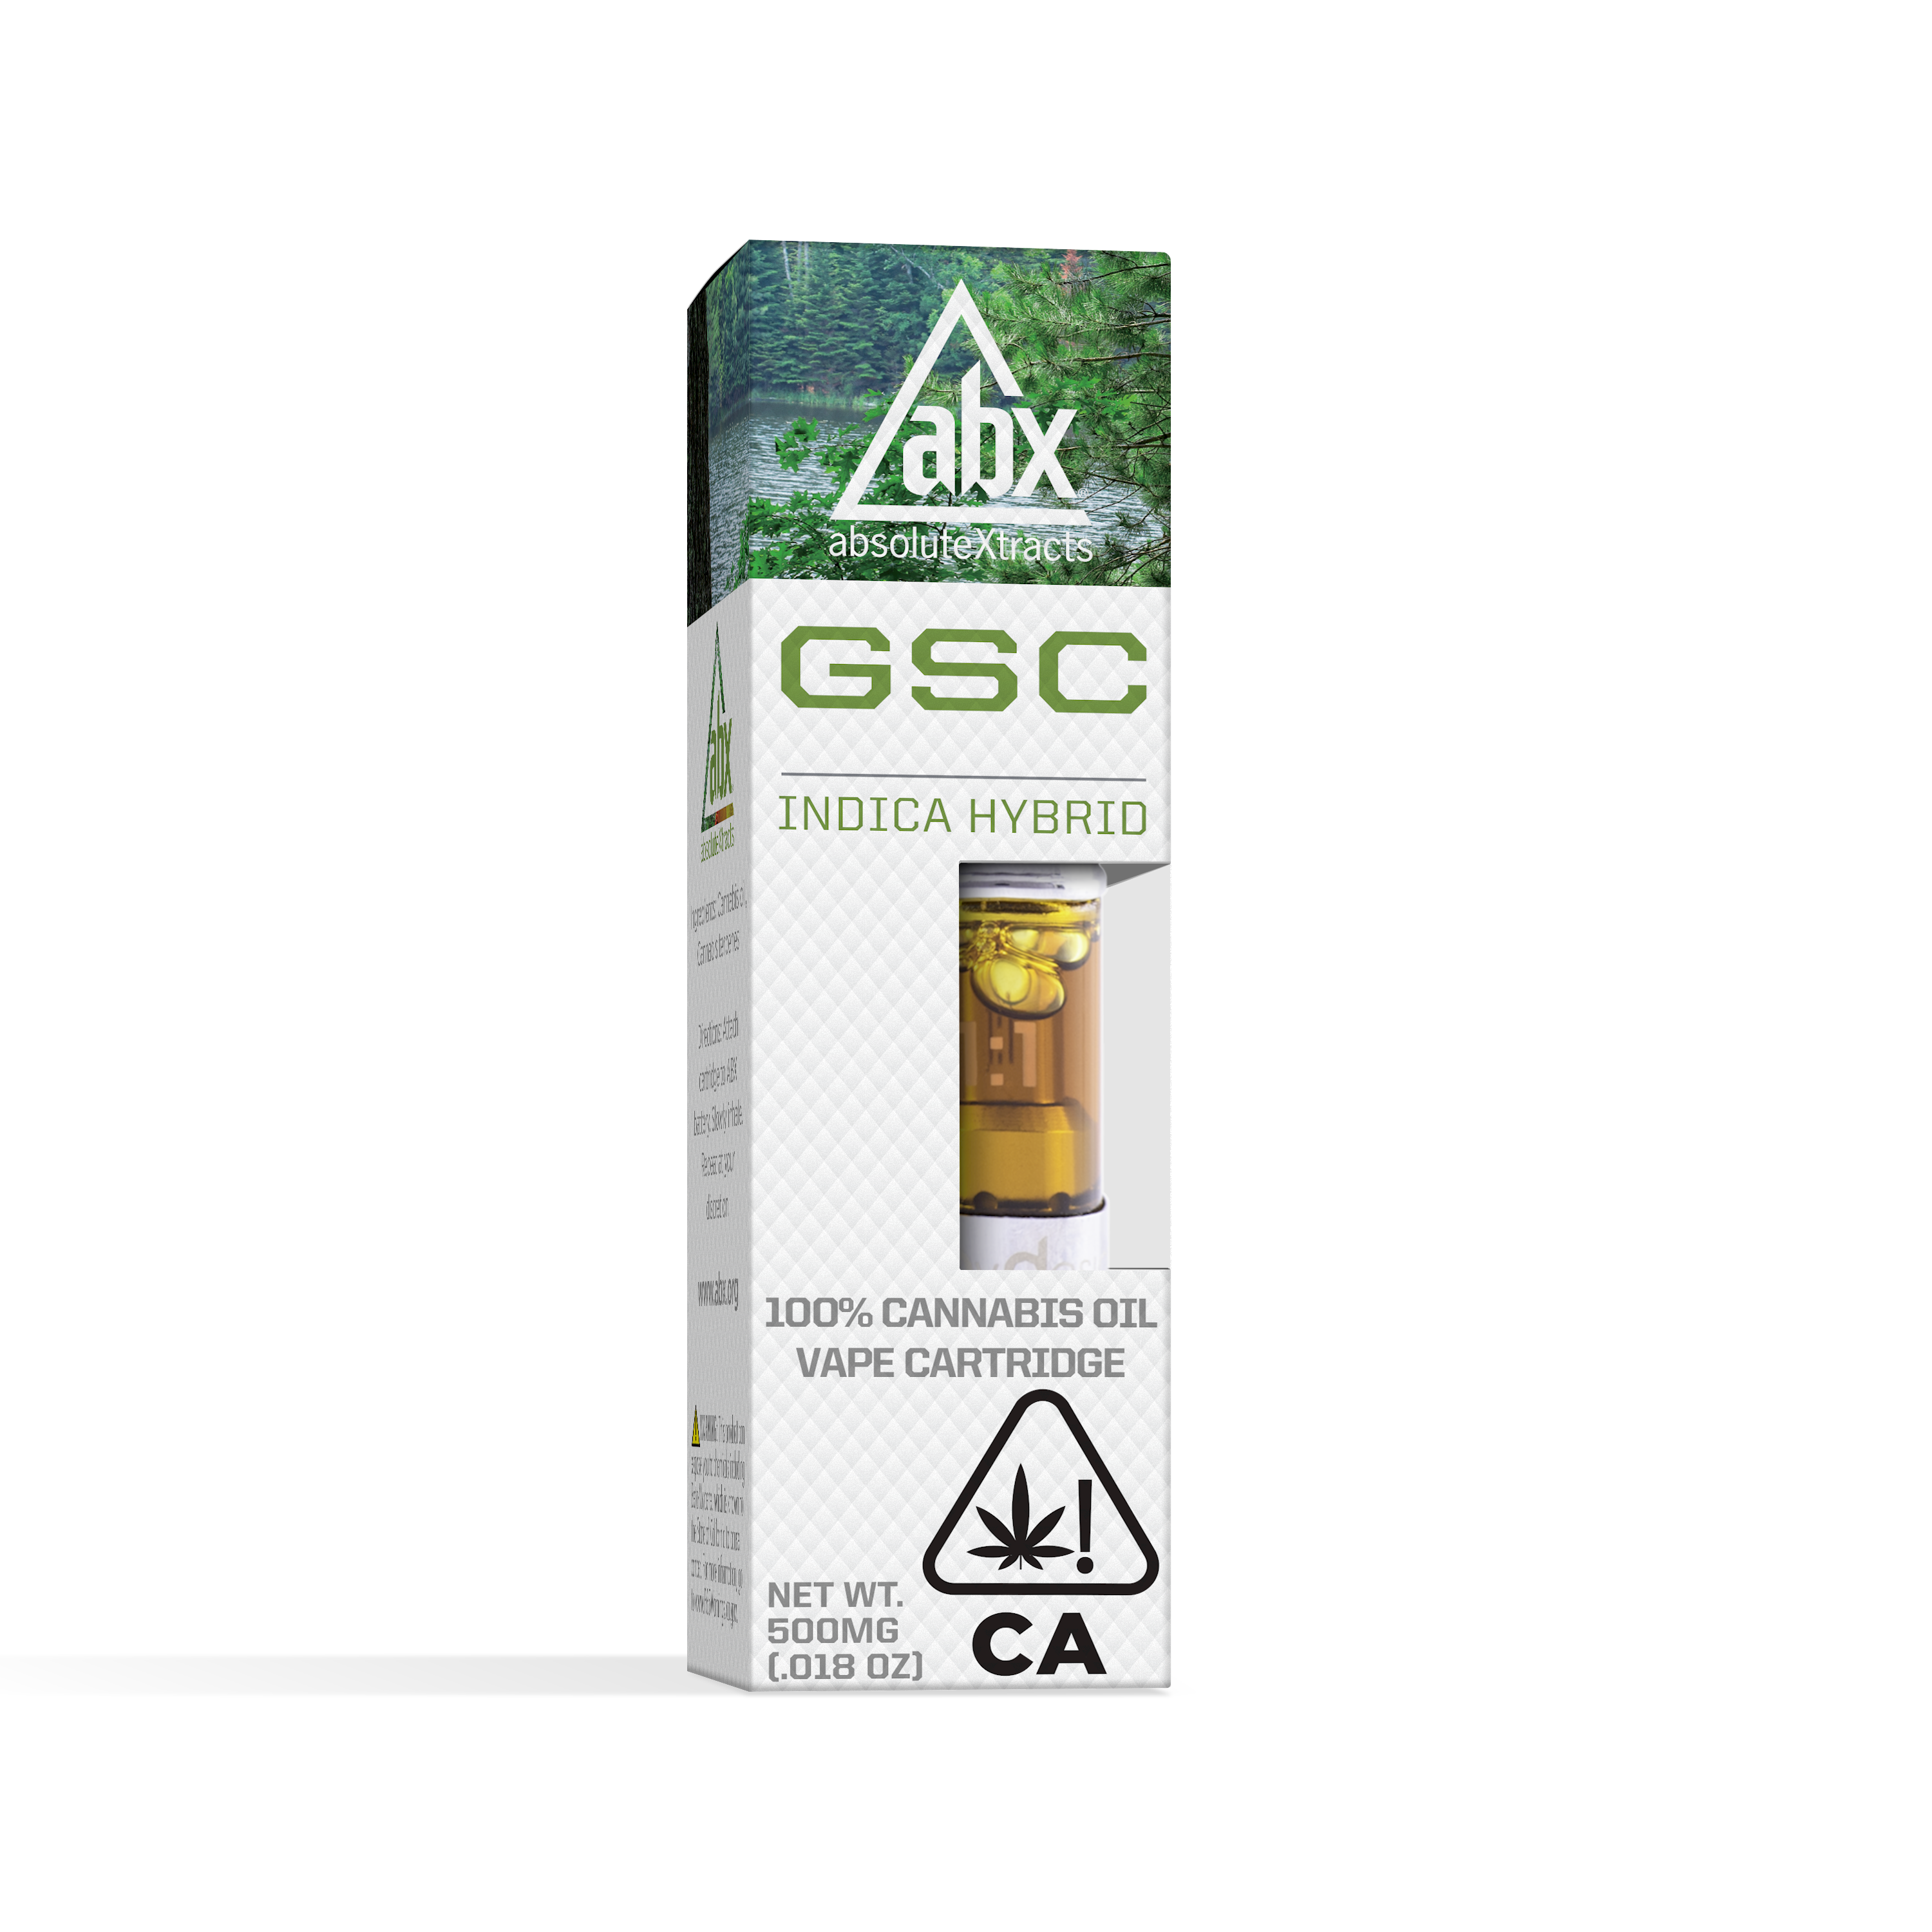 GSC OGKB Strain - Hybrid Cannabis Video, THC, Terpenes : Hytiva